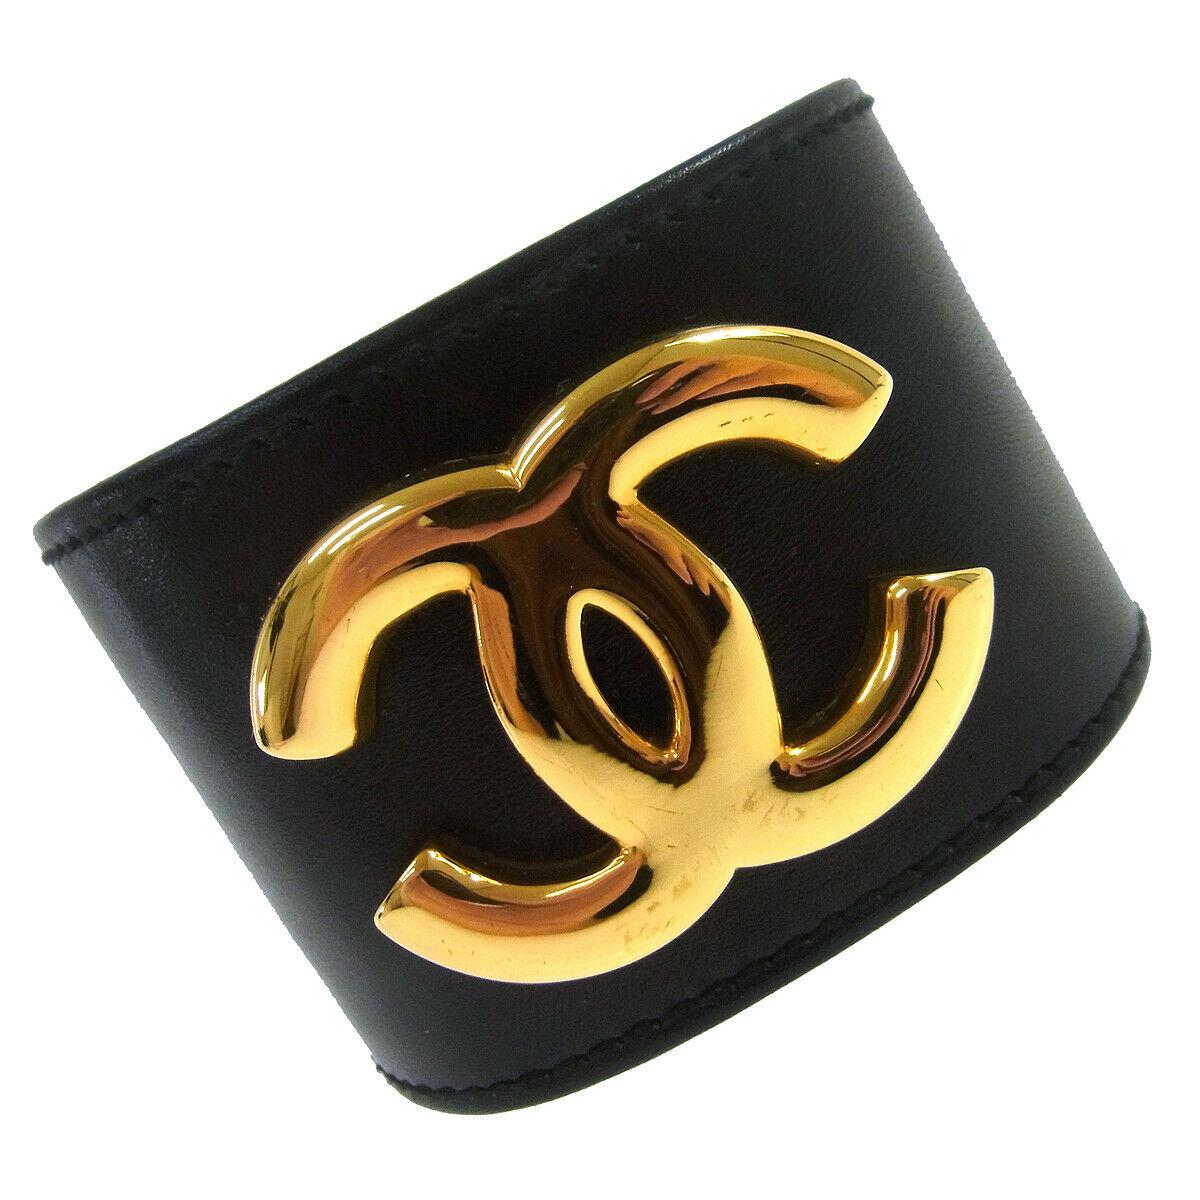 Chanel Black Leather Gold Charm Men's Women's Wide Cuff Bracelet in Box